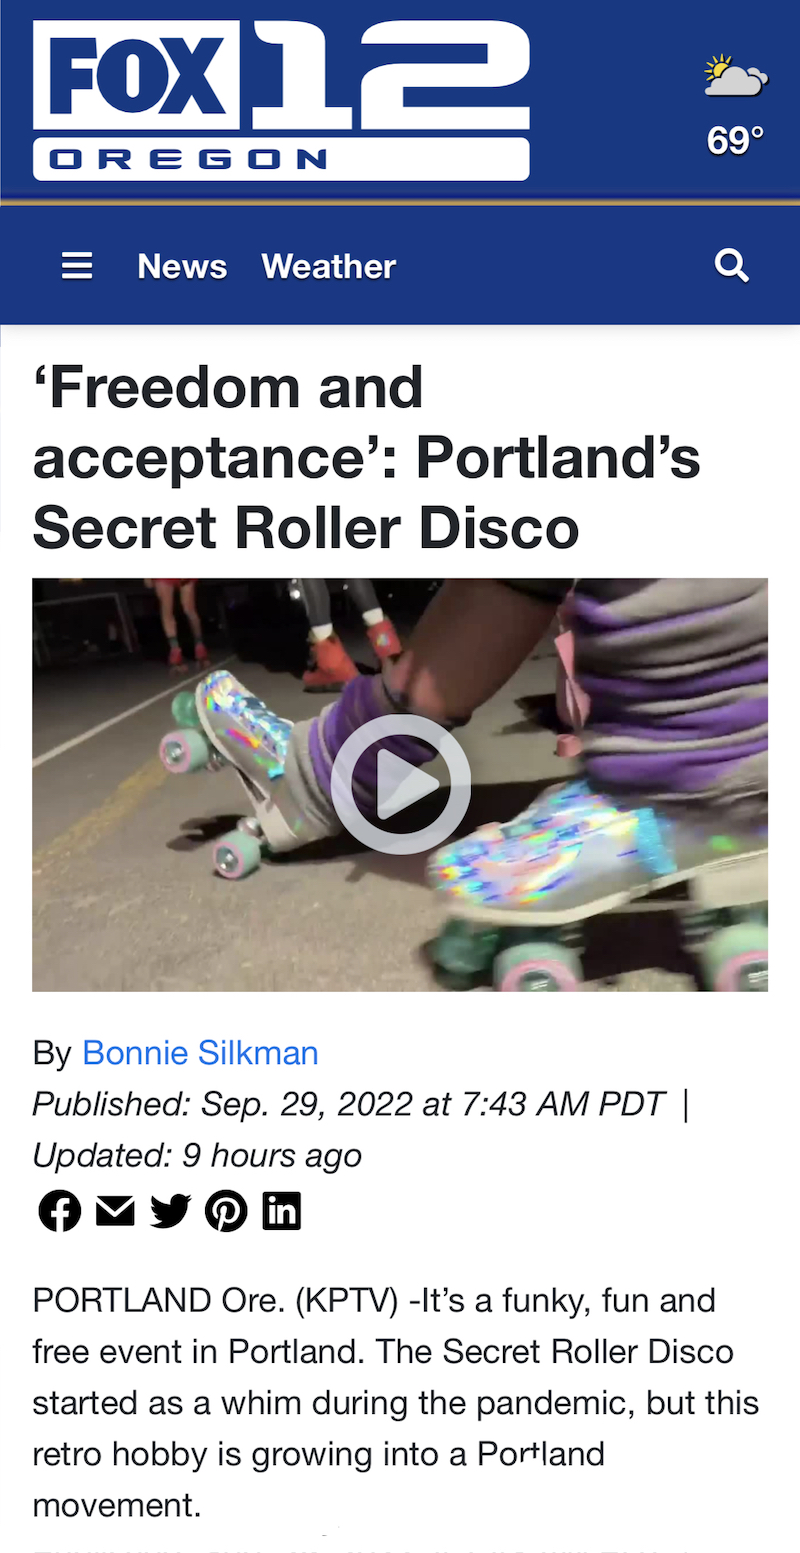 Screenshot of an article on the Fox 12 News website about Secret Roller Disco